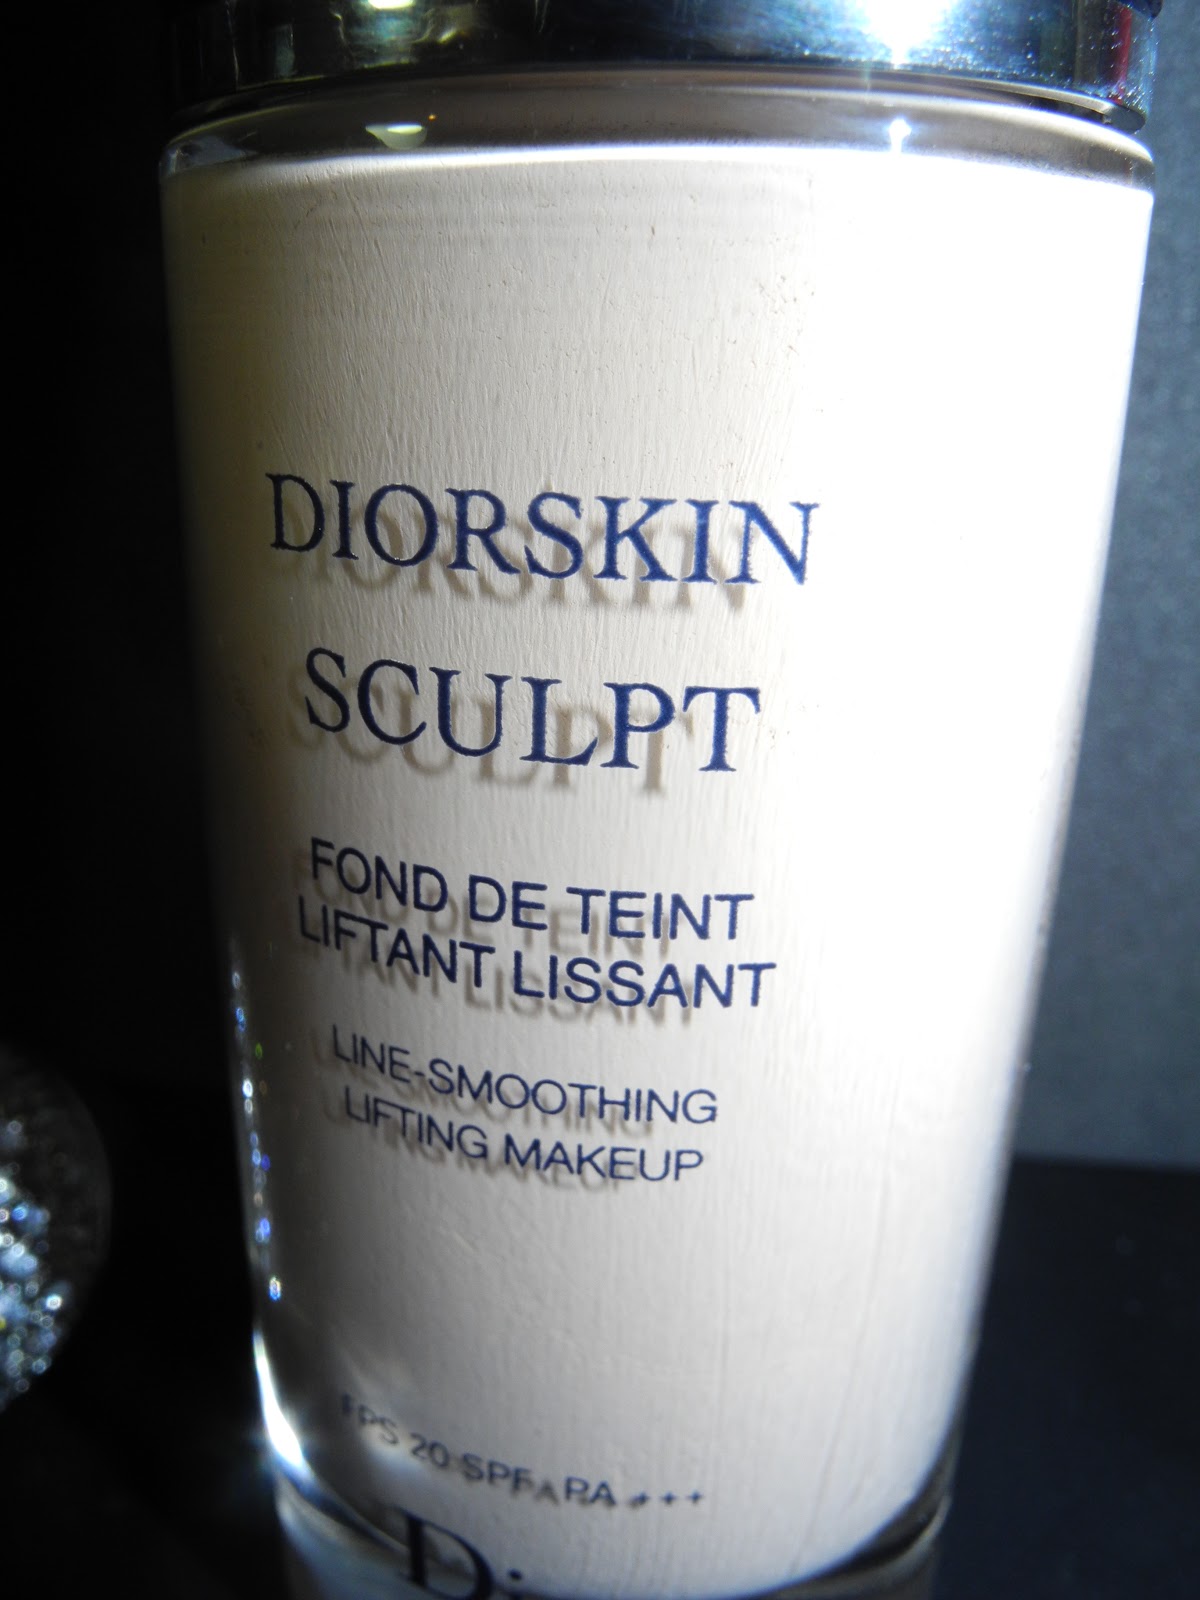 diorskin sculpt fond de teint liftant lissant